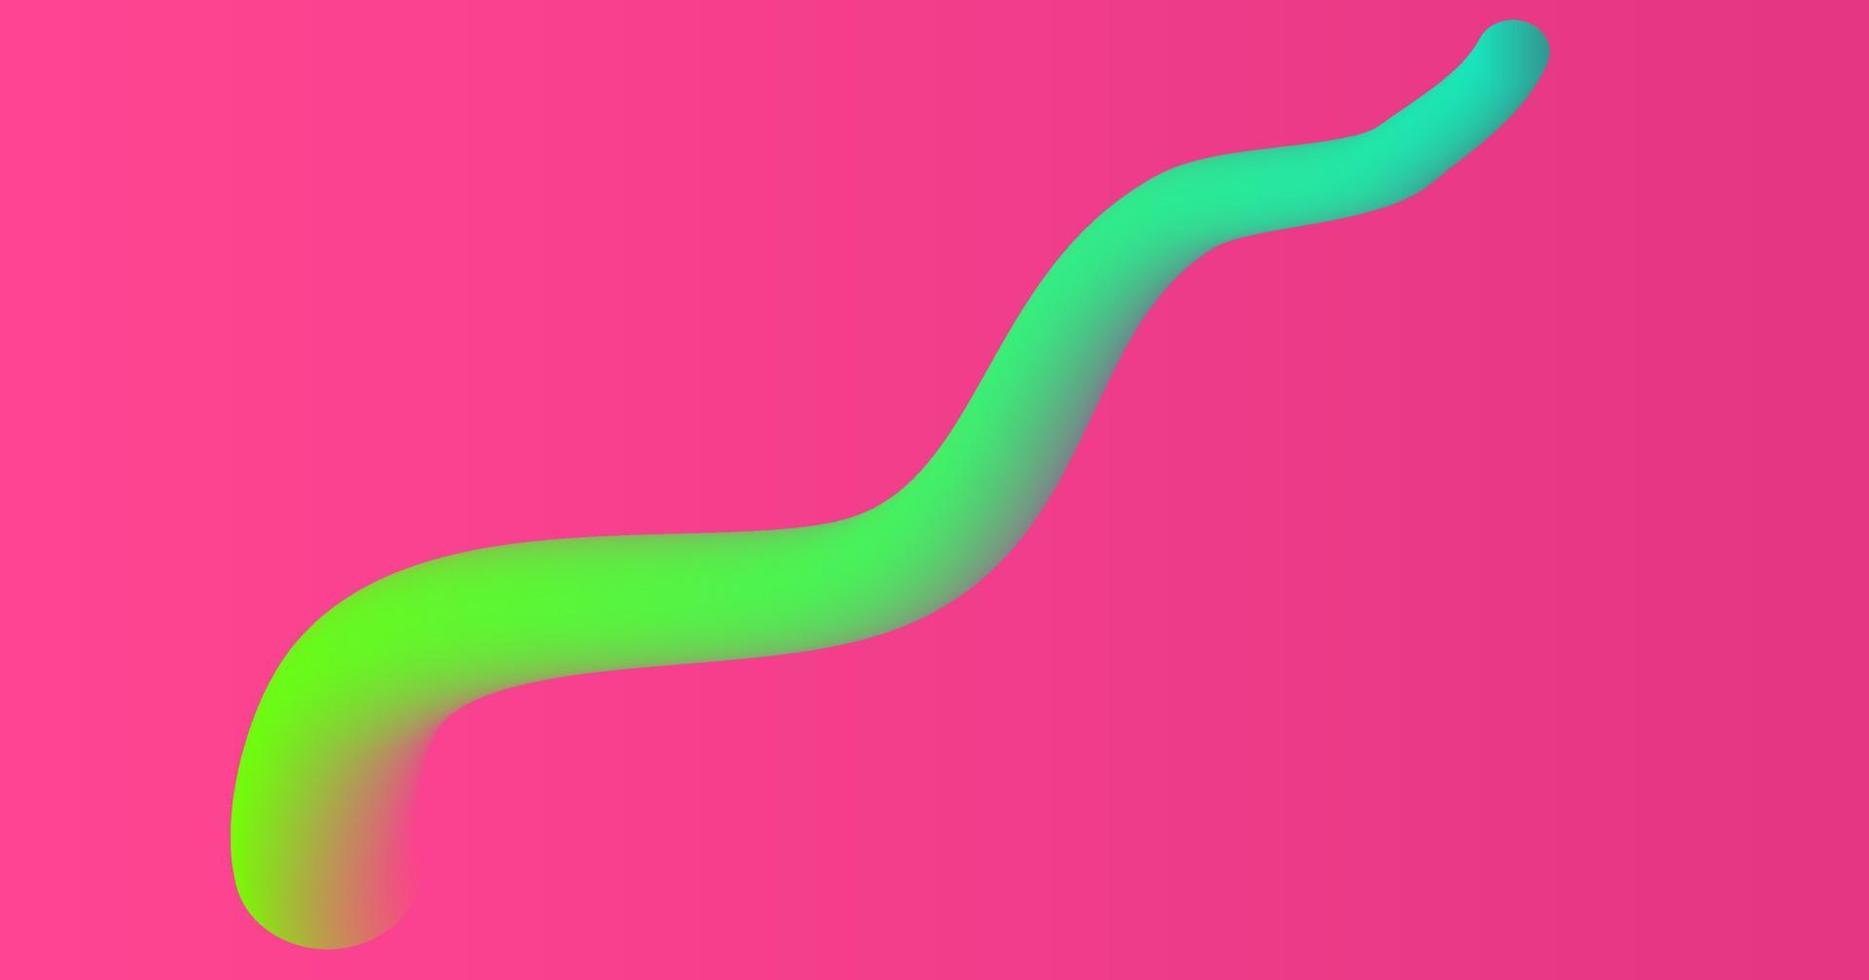 Rosa Farbe Hintergrund, Hintergrund vektor